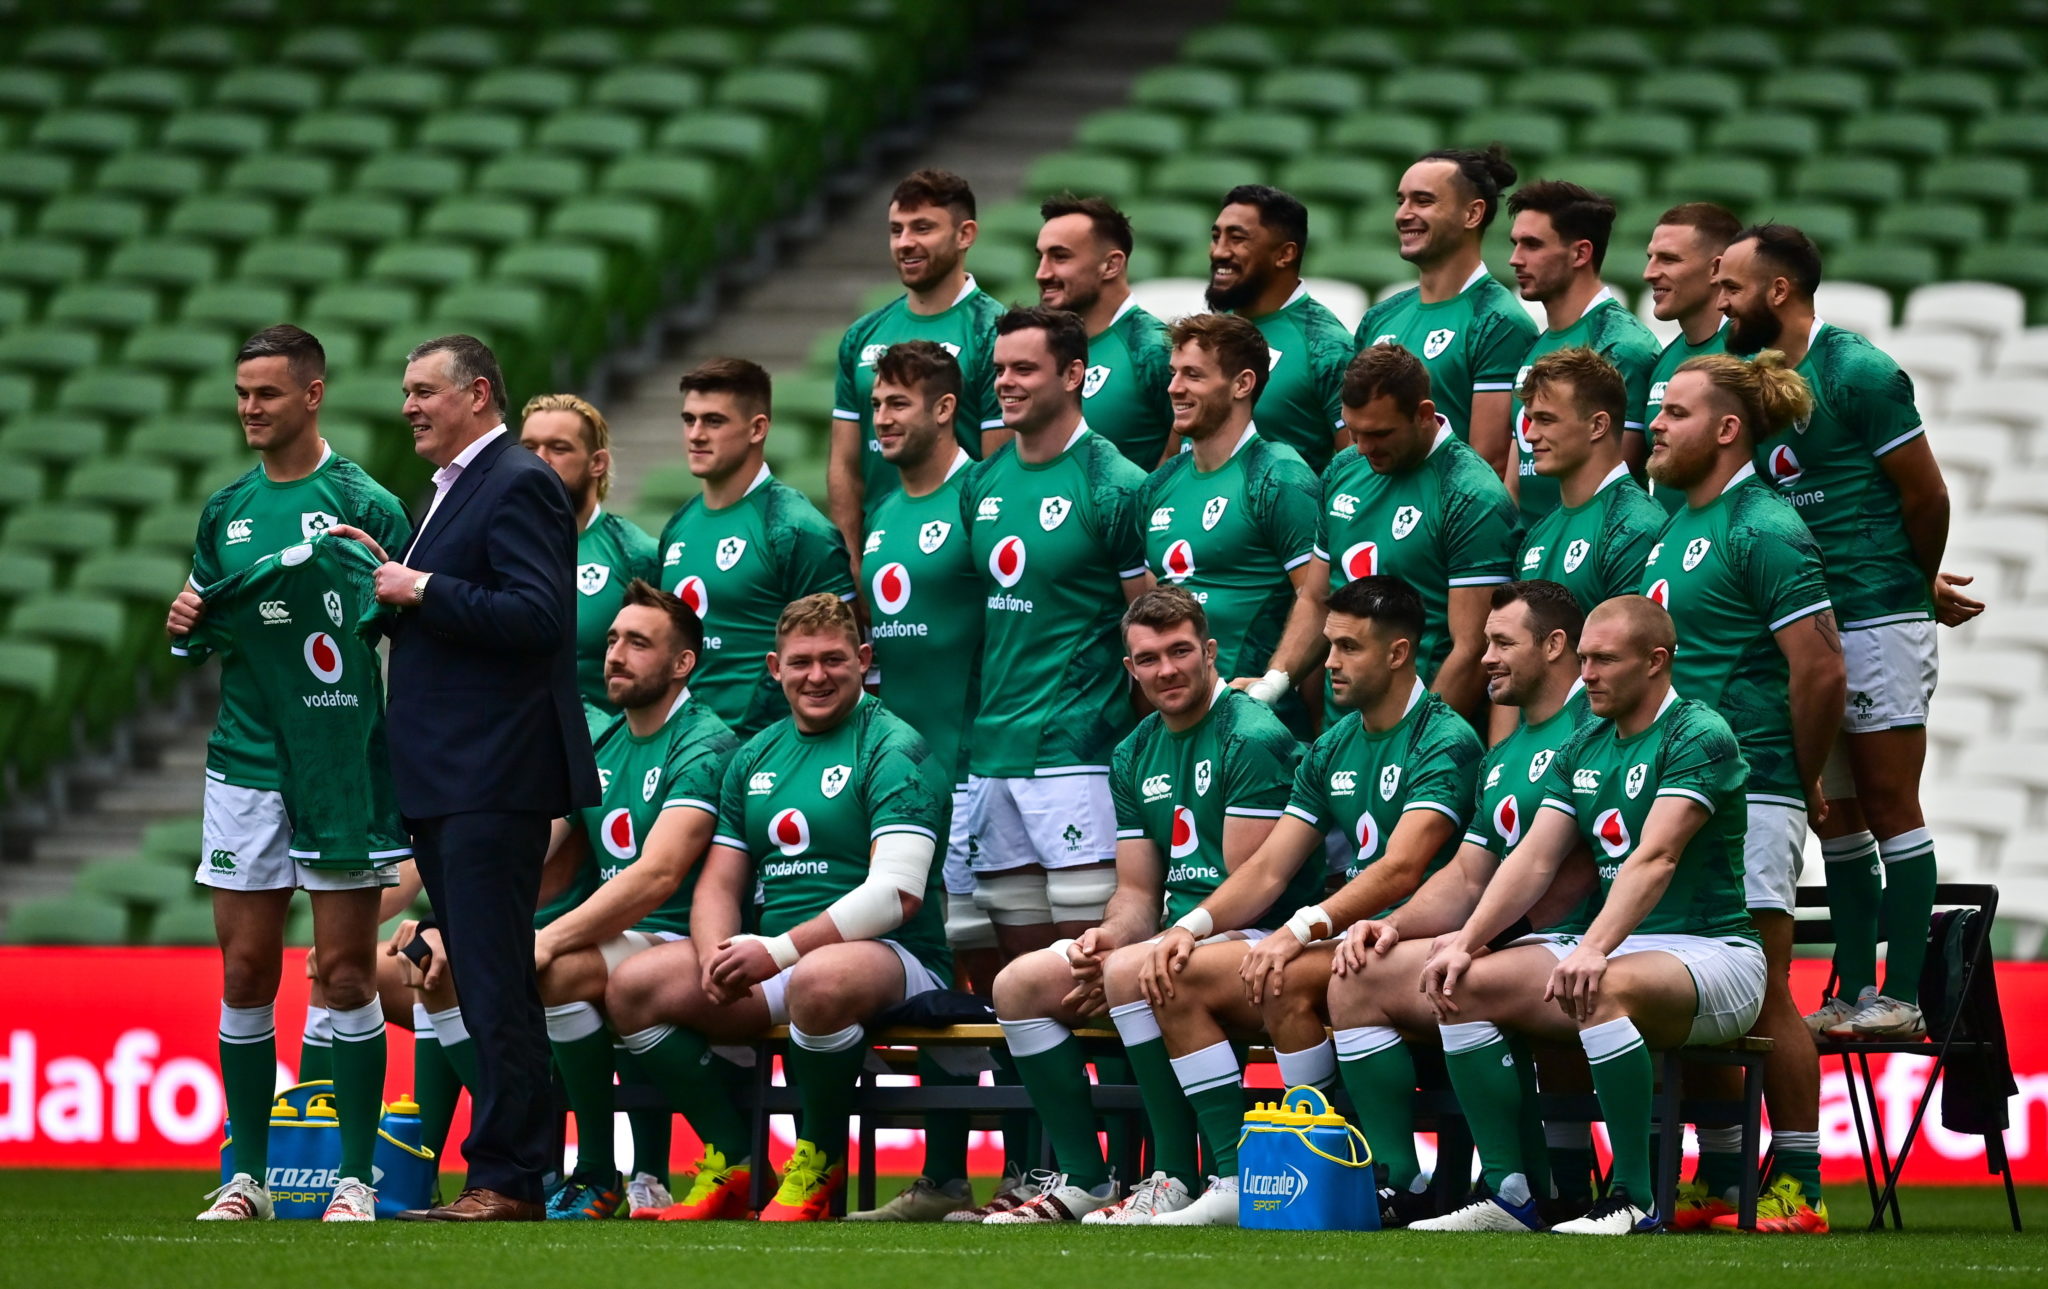 Ireland captain's run